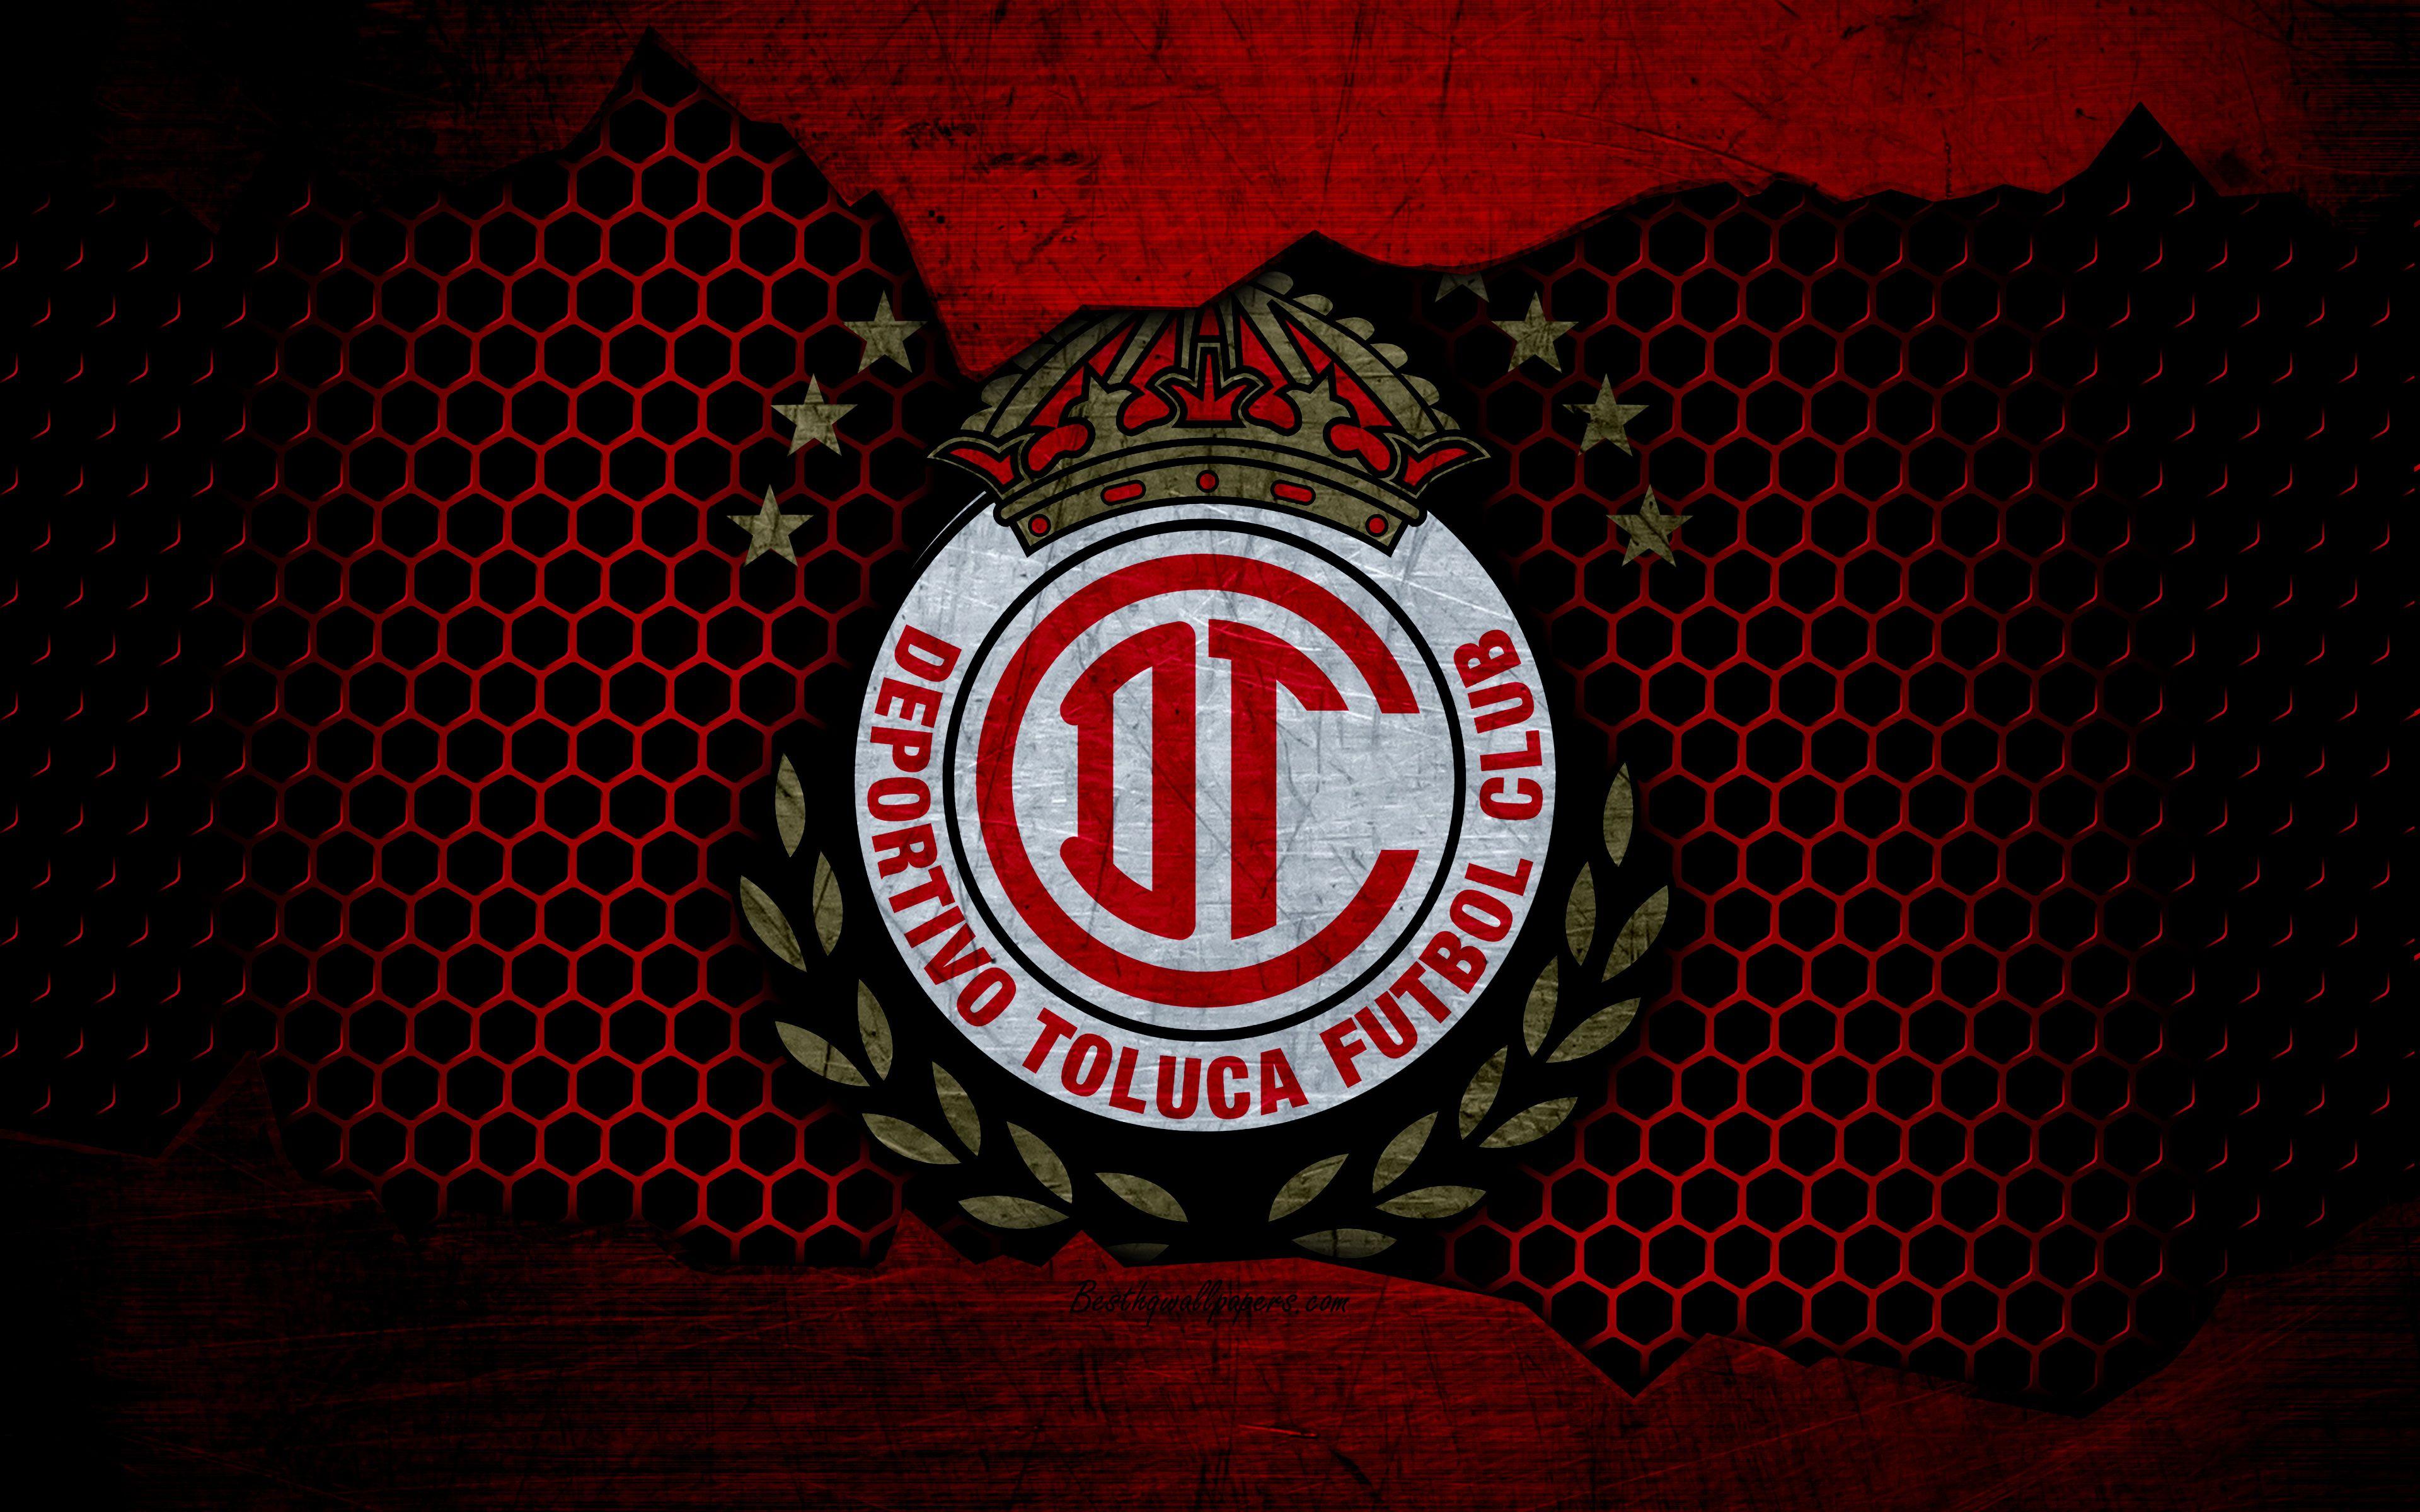 Download wallpaper Toluca, 4k, logo, Liga MX, soccer, Primera